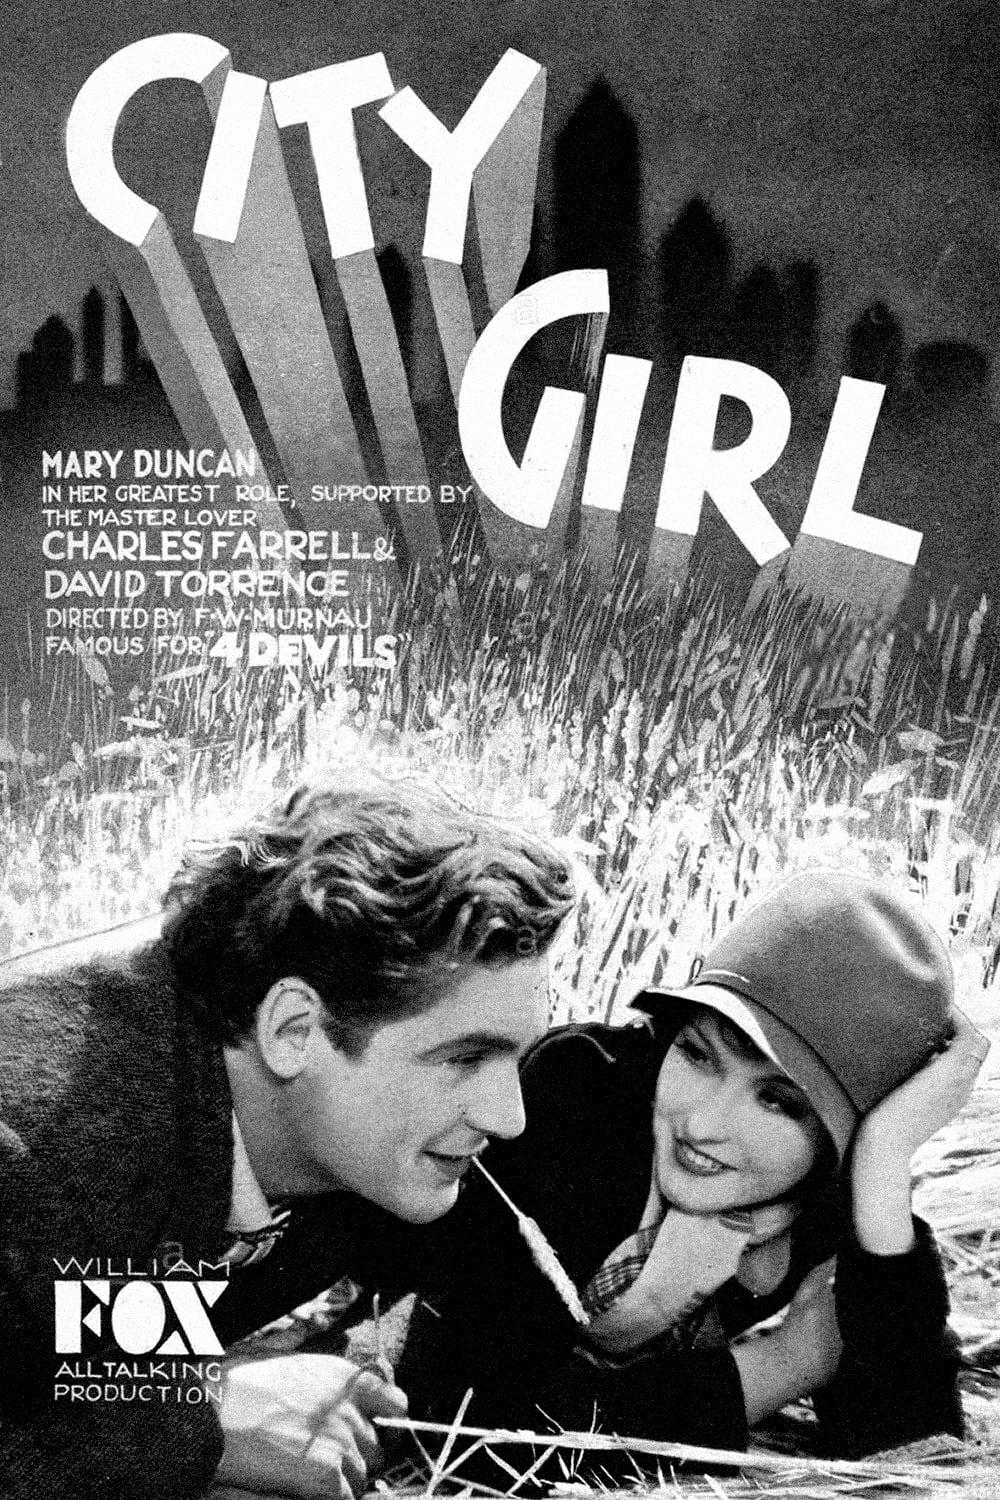 City Girl poster